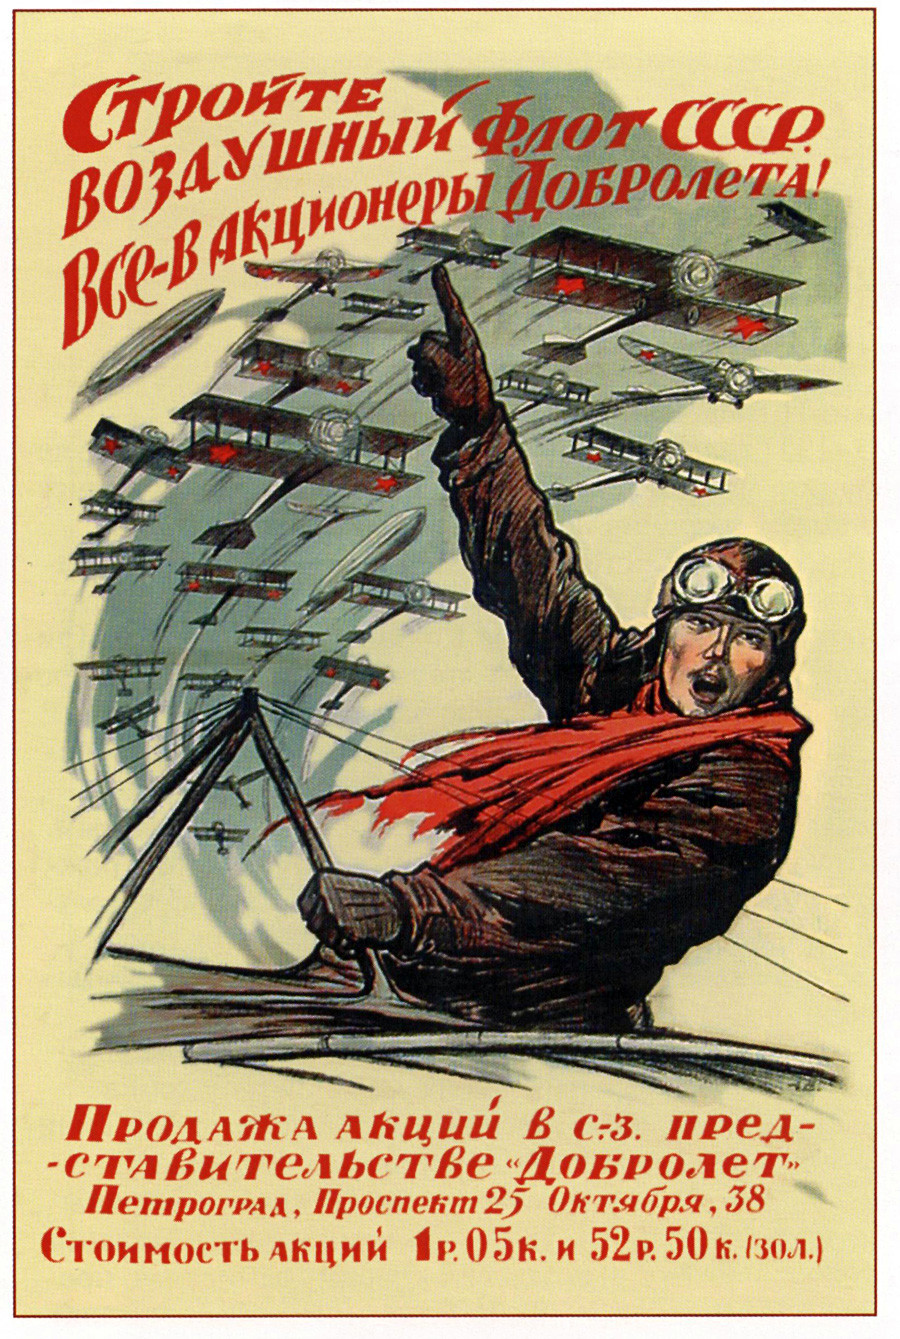 « Construisez la flotte soviétique aérienne ! Tous, devenez actionnaires de Dobroliot ! »